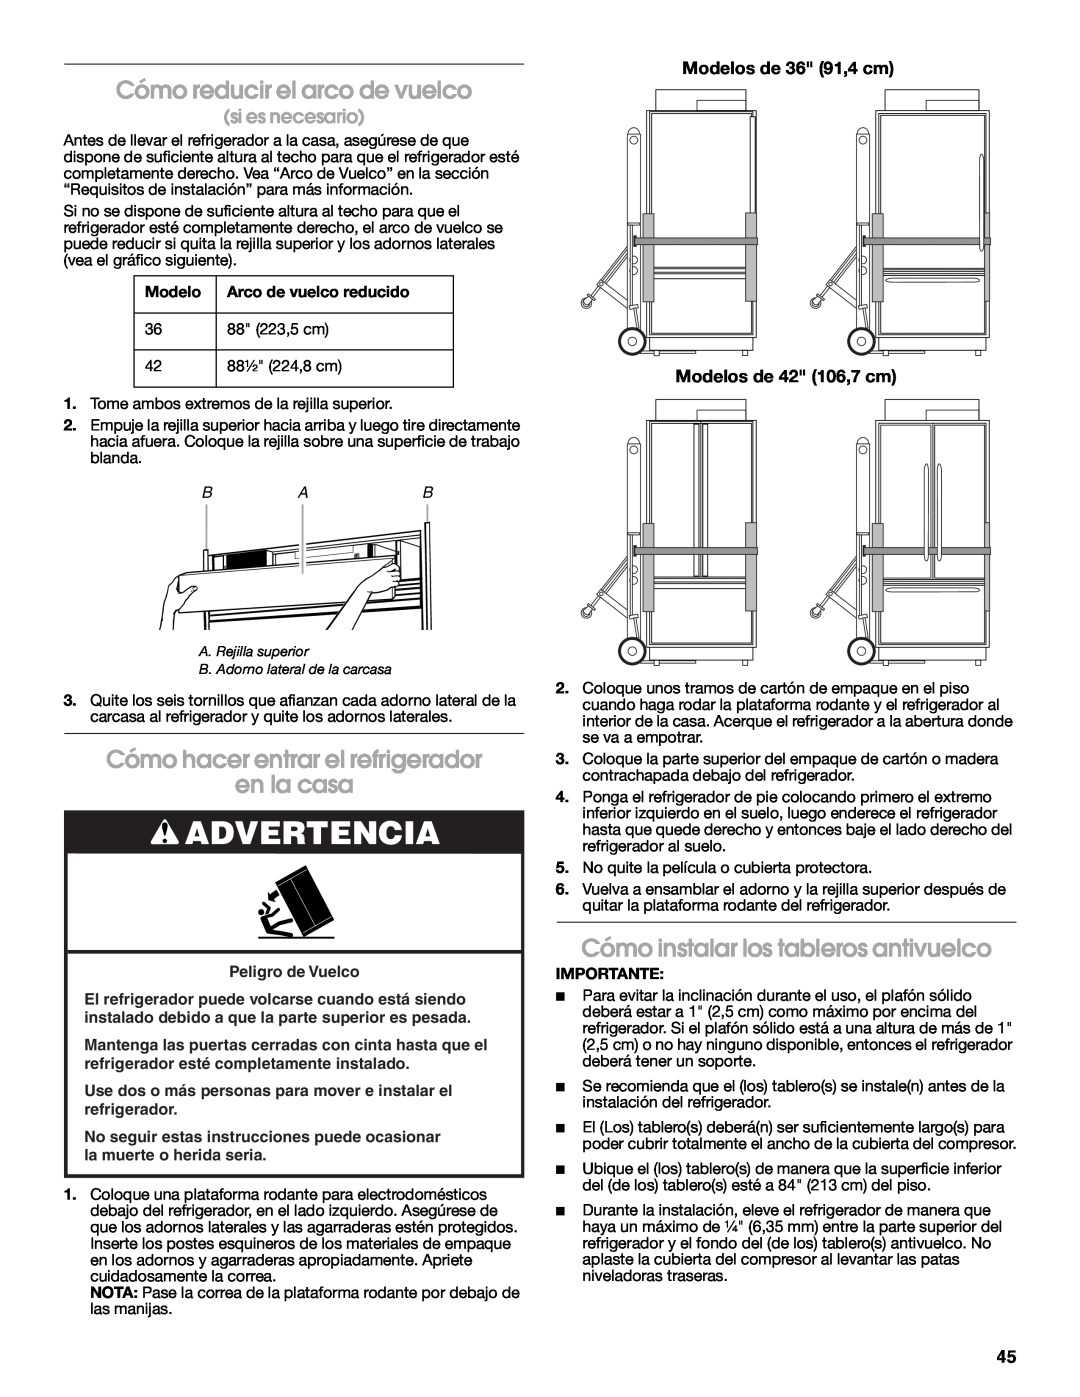 Jenn-Air W10183782A Cómo reducir el arco de vuelco, Cómo hacer entrar el refrigerador en la casa, si es necesario, Modelo 